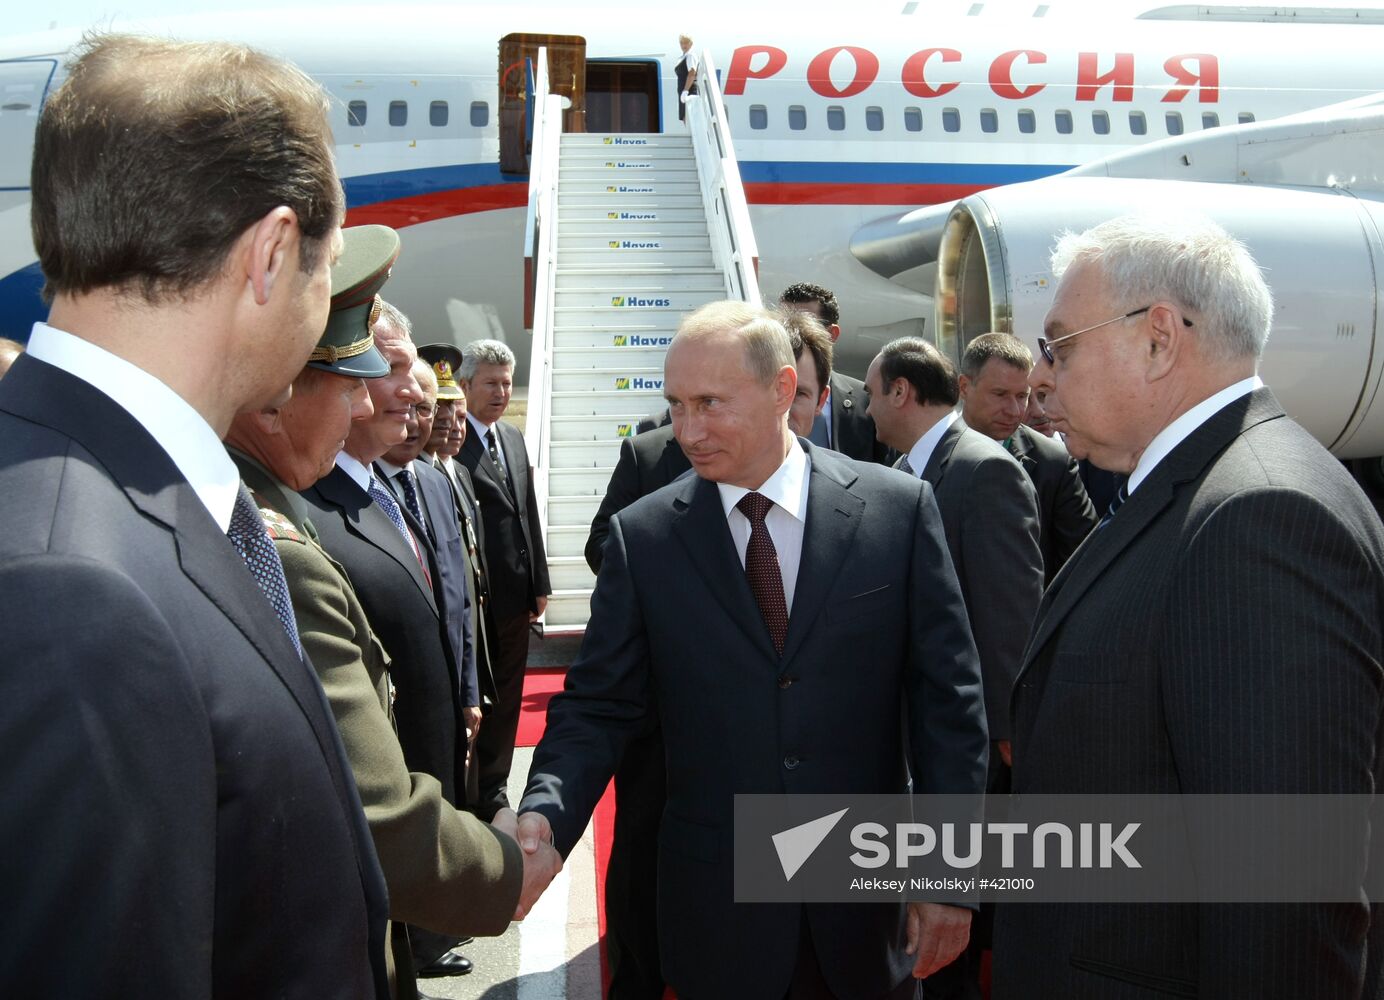 Vladimir Putinm arrives in Turkey on a working visit